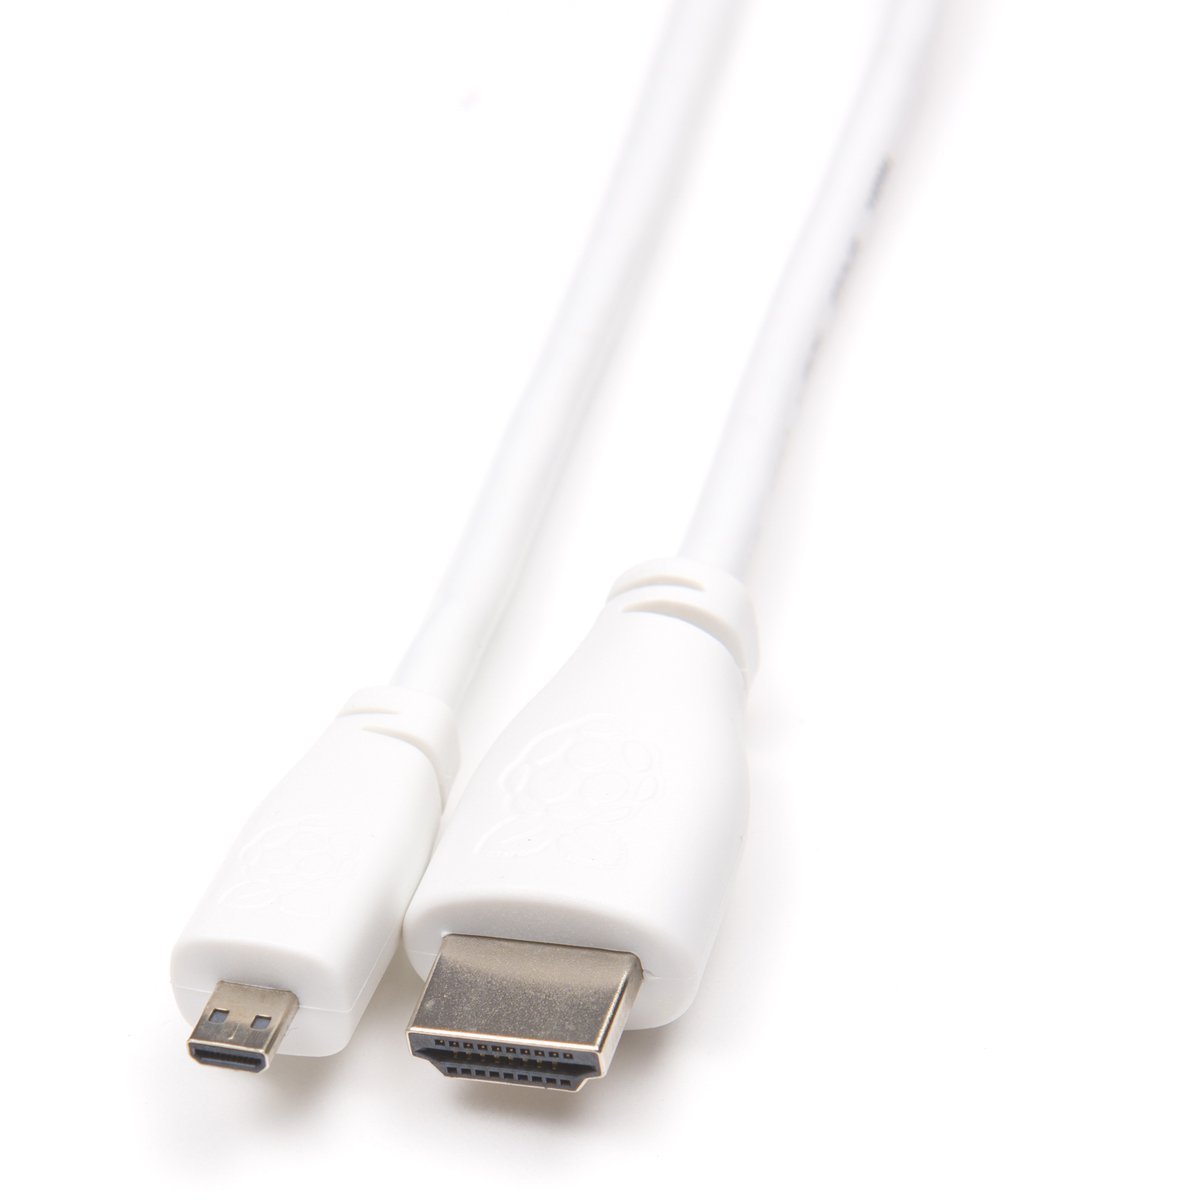 Cable chuyển microHDMI to HDMI Official dành cho Raspberry Pi 4 - Hàng Chính Hãng